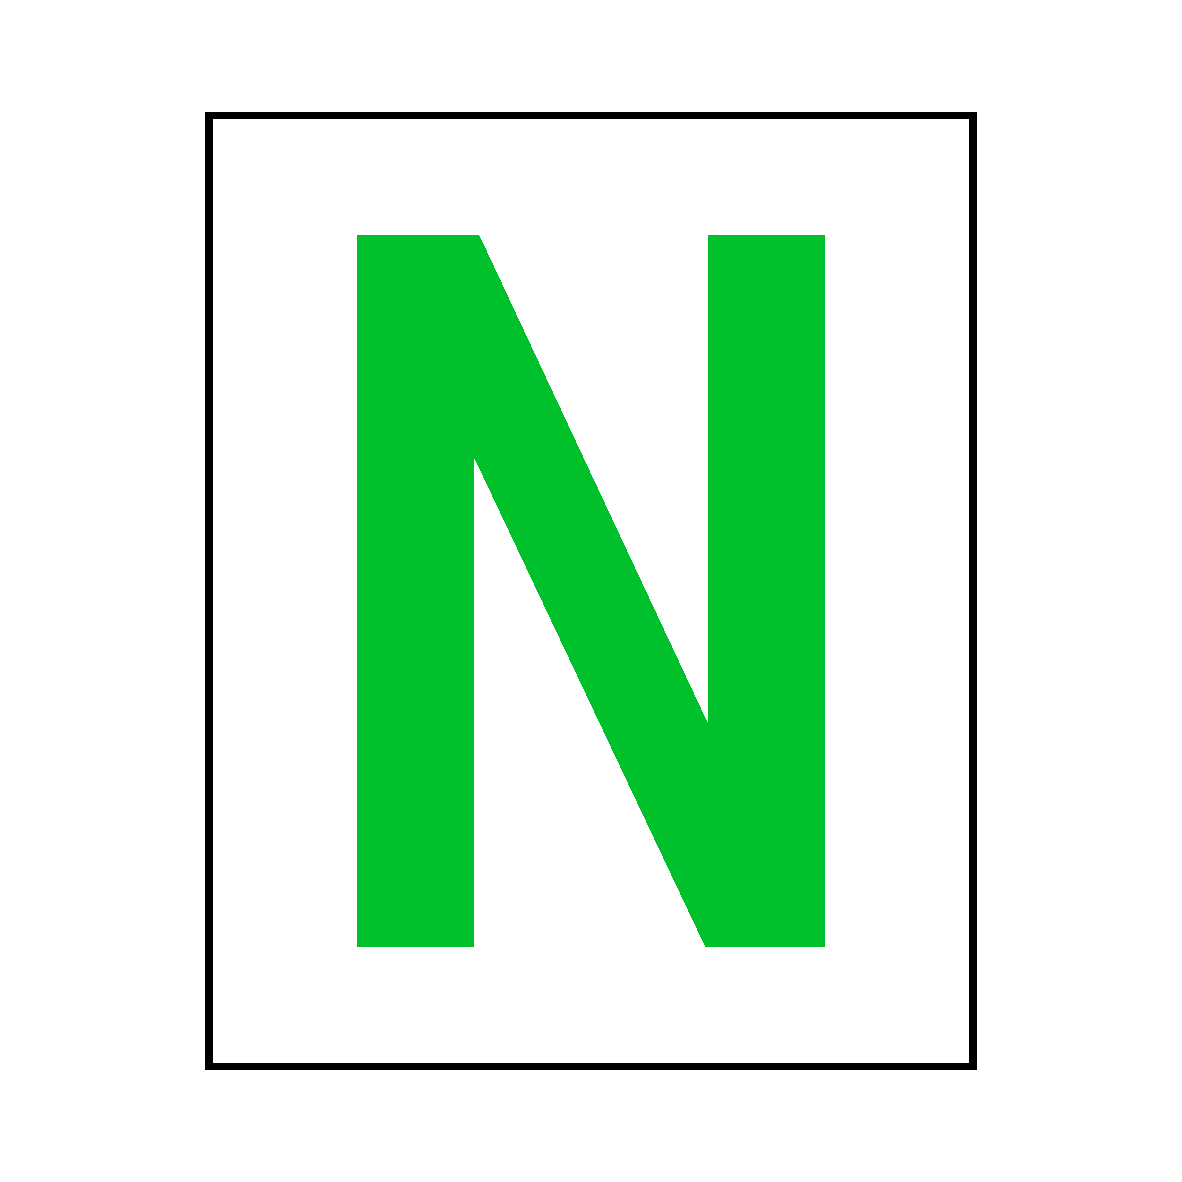 green letter n